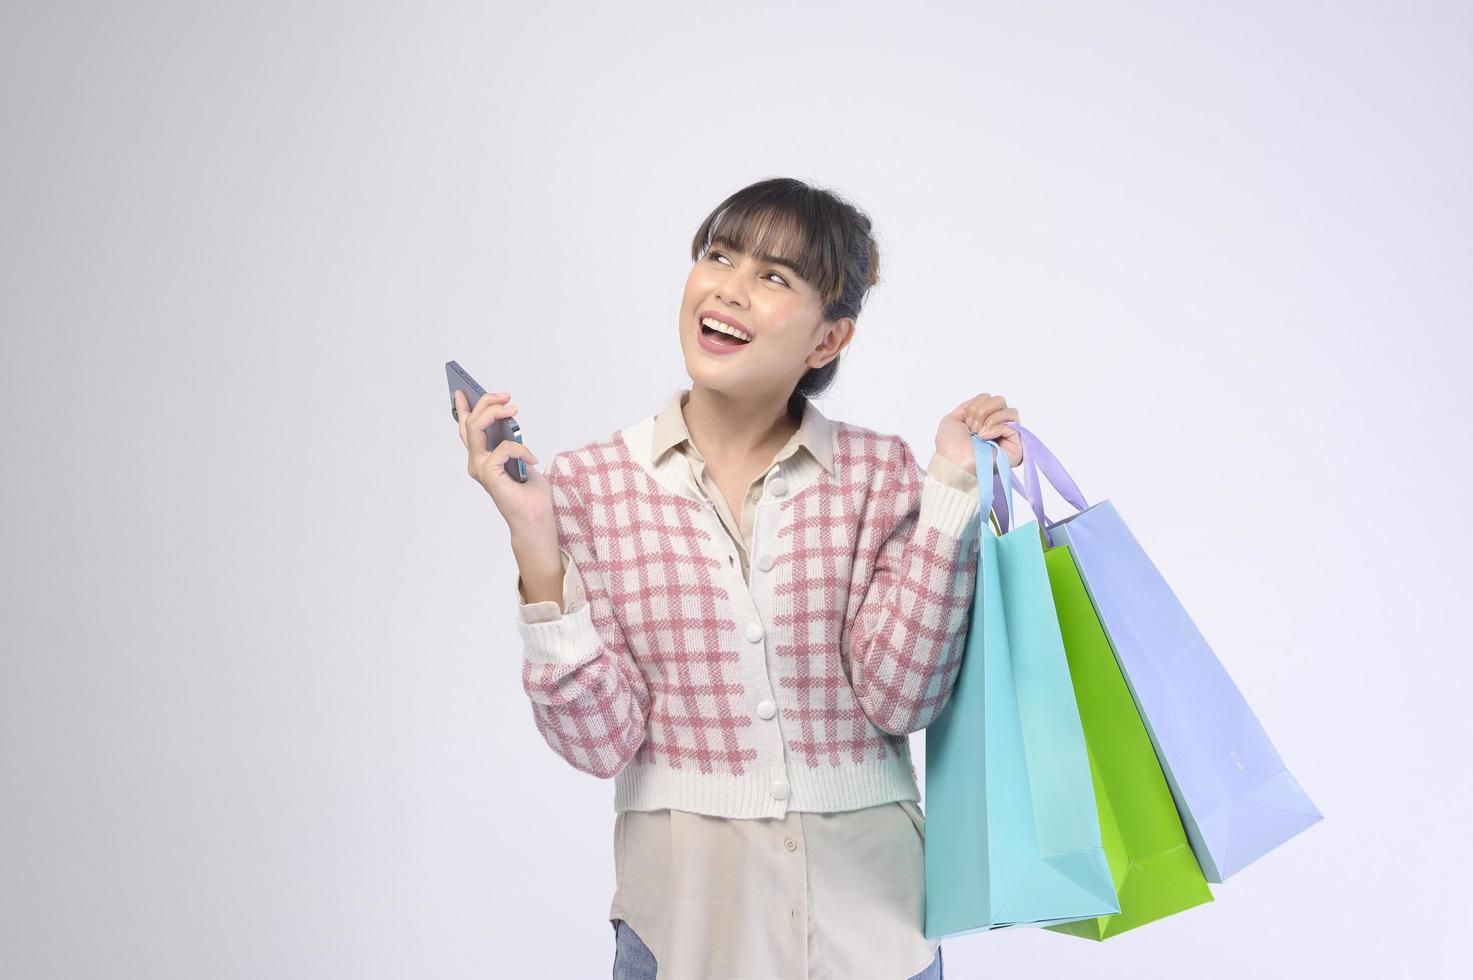 Shopper atractiva mujer sosteniendo bolsas de compras sobre fondo blanco. foto